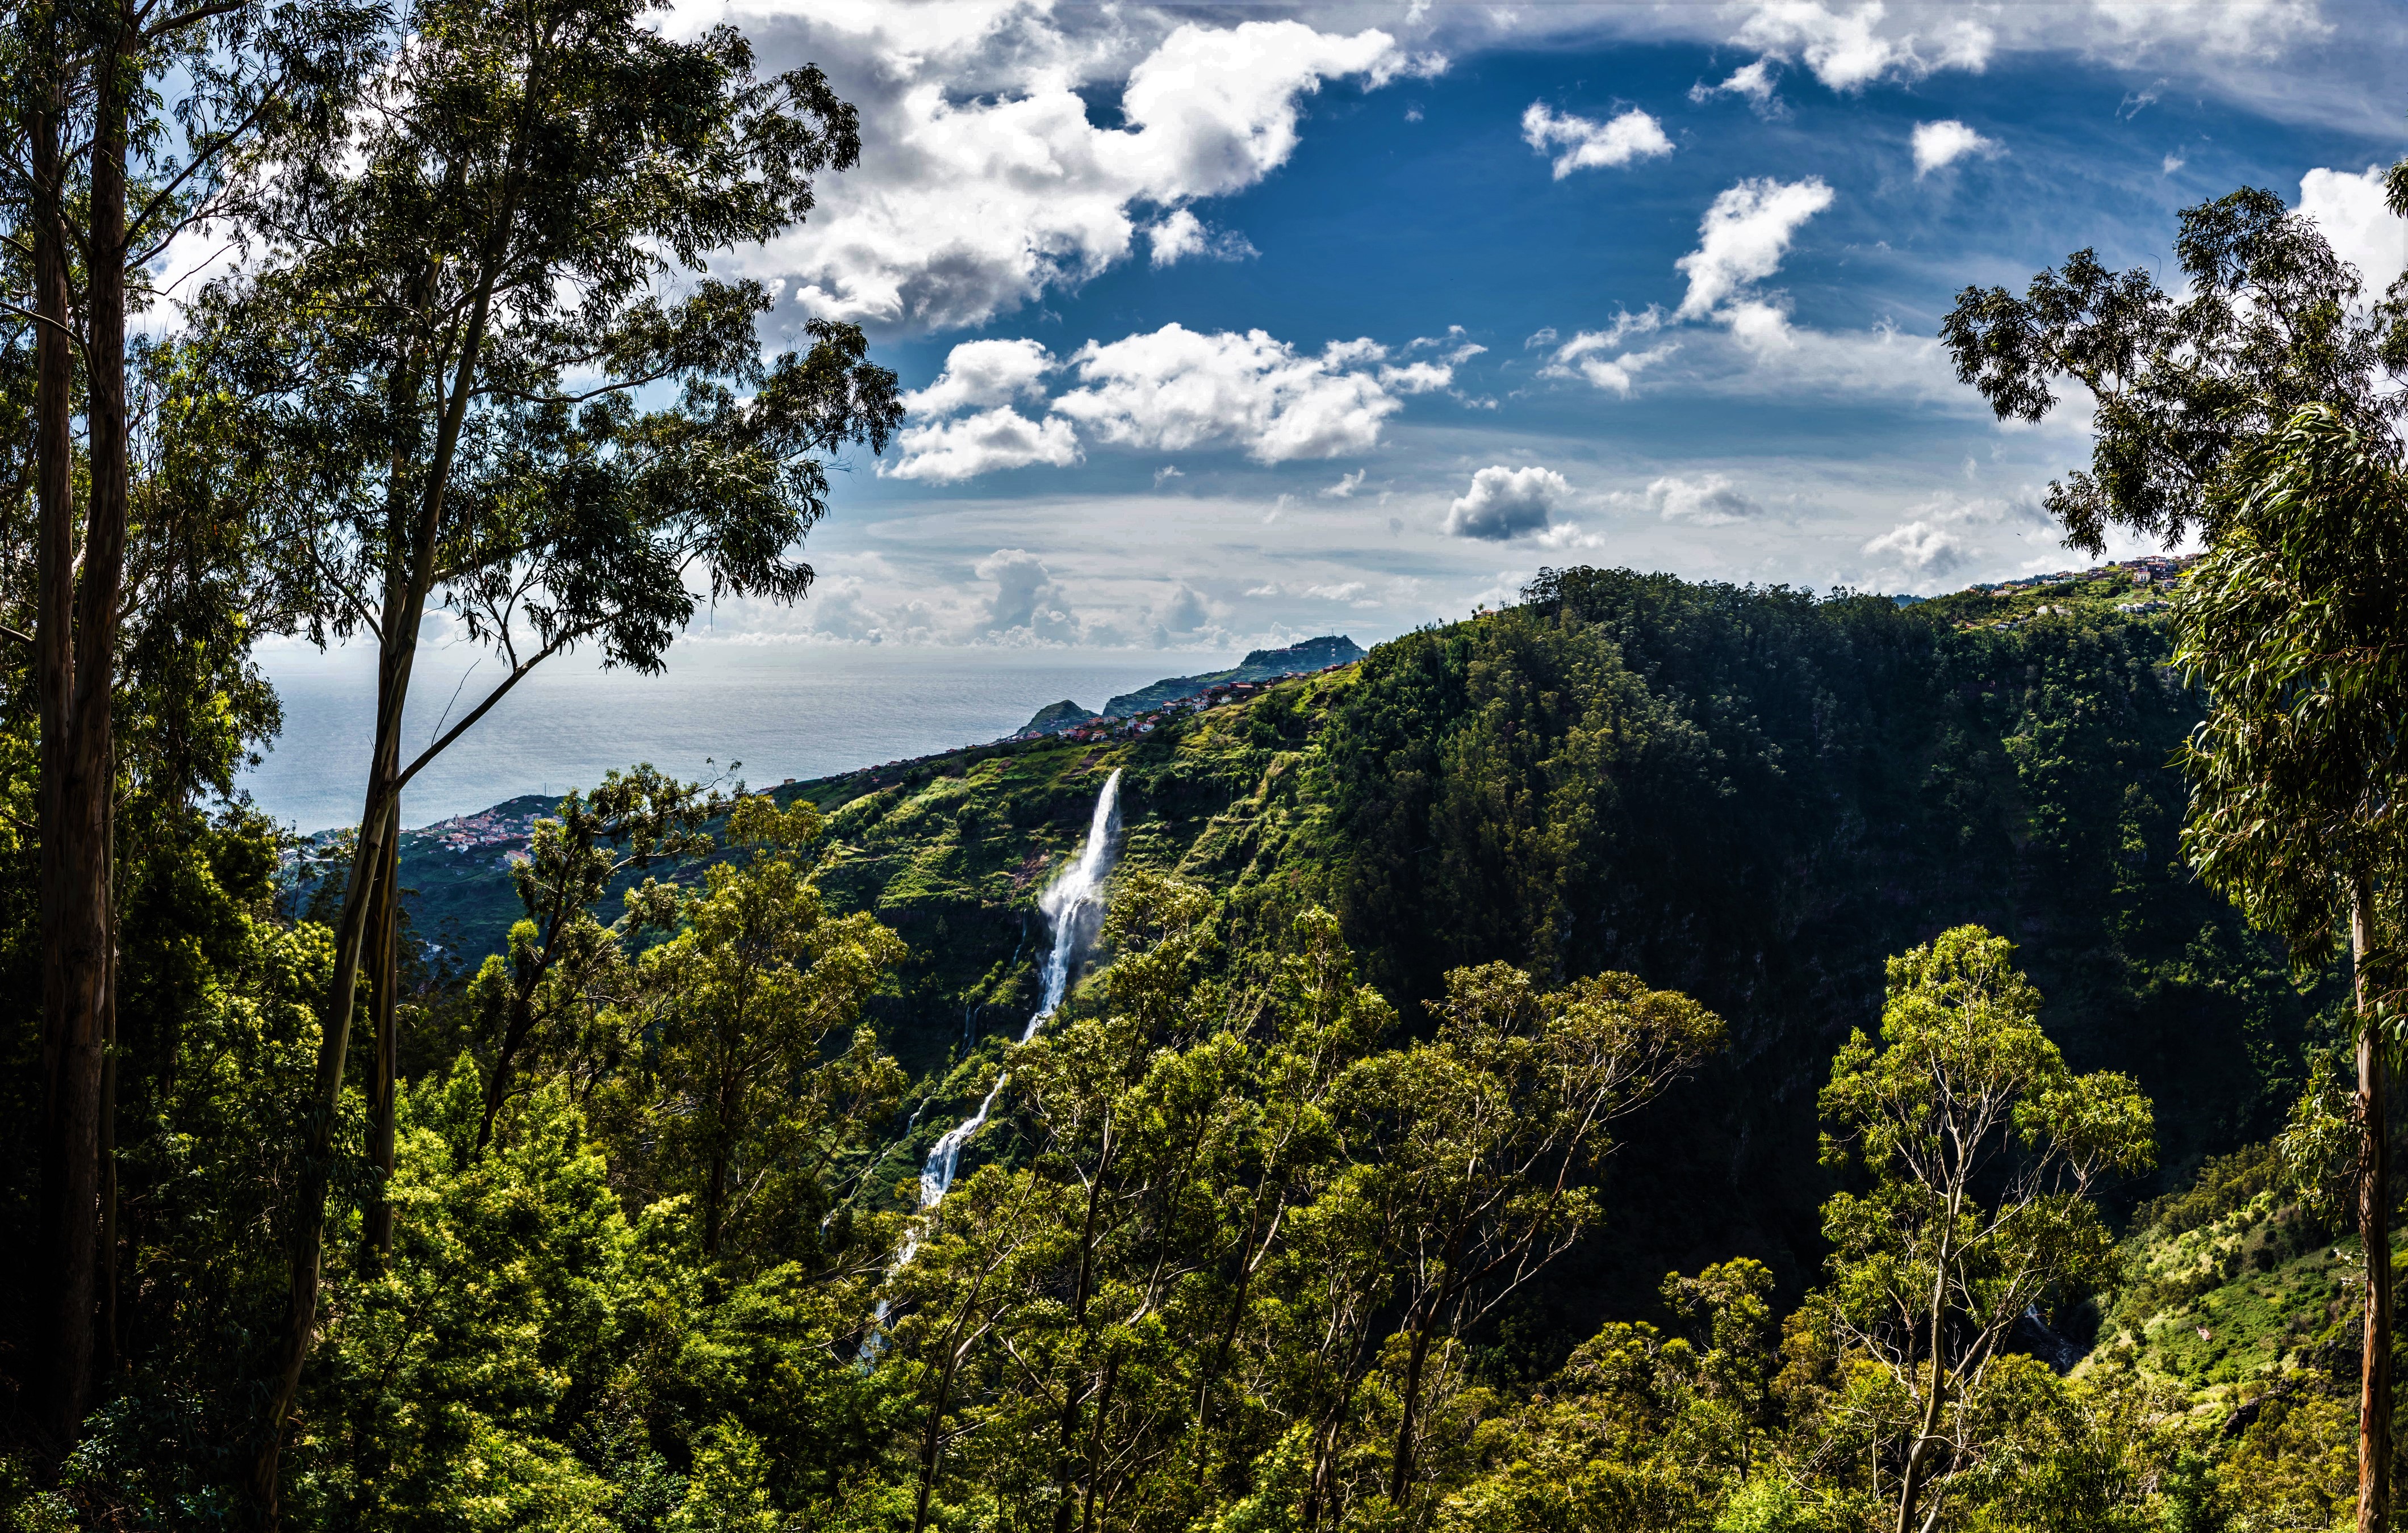 Скачать обои бесплатно Водопады, Водопад, Лес, Португалия, Земля/природа картинка на рабочий стол ПК